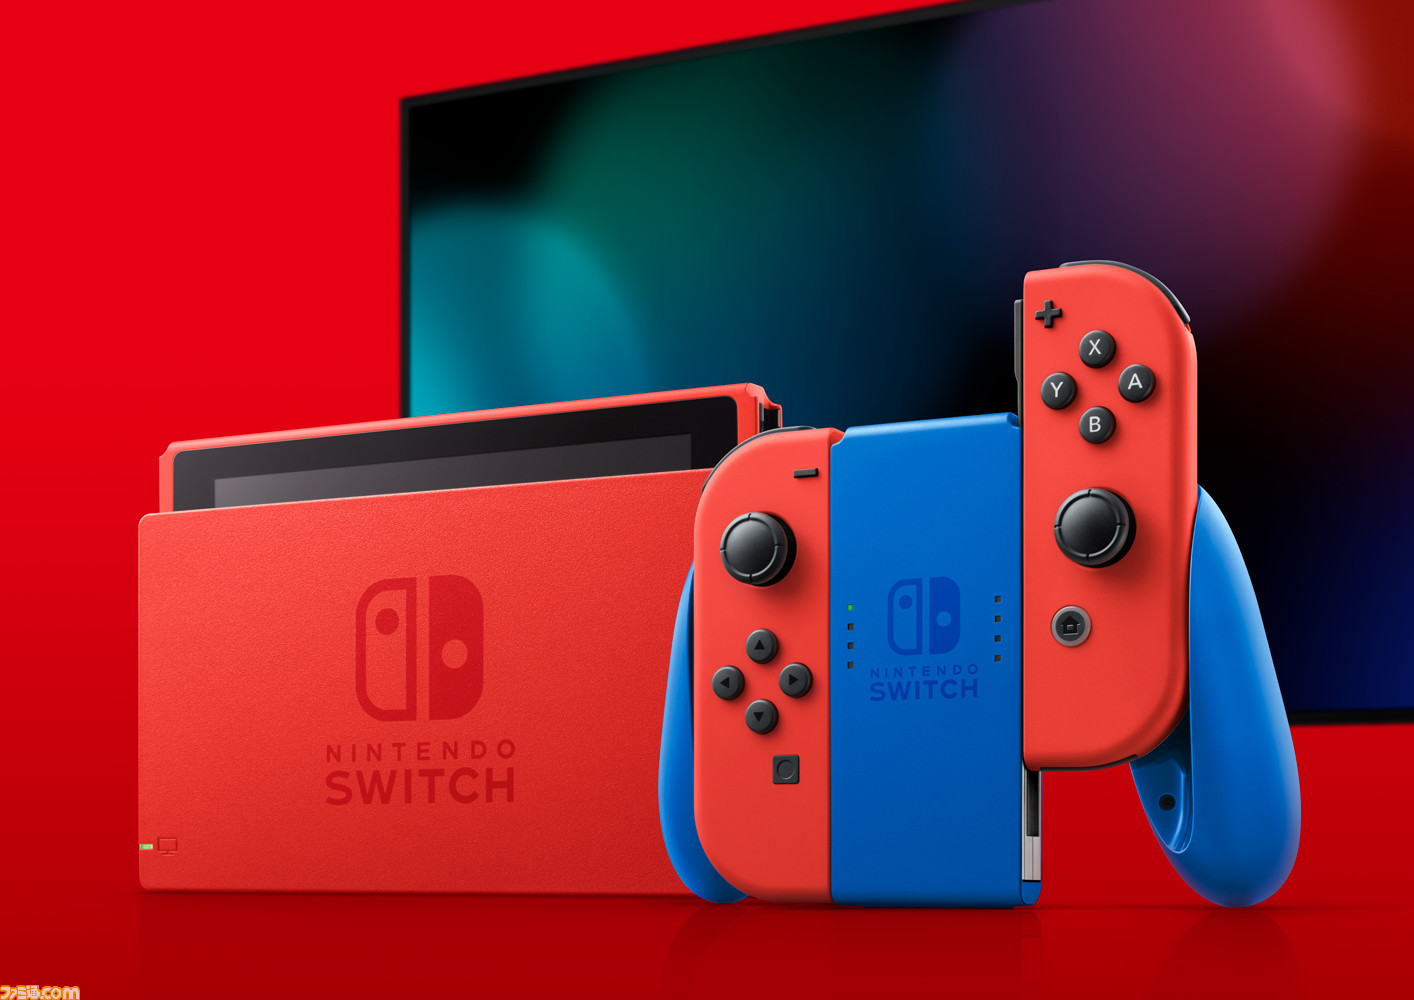 Nintendo Switch新色“マリオレッド×ブルー セット”2月12日発売決定。本体部分が赤になった、初の本体カラー変更モデル 